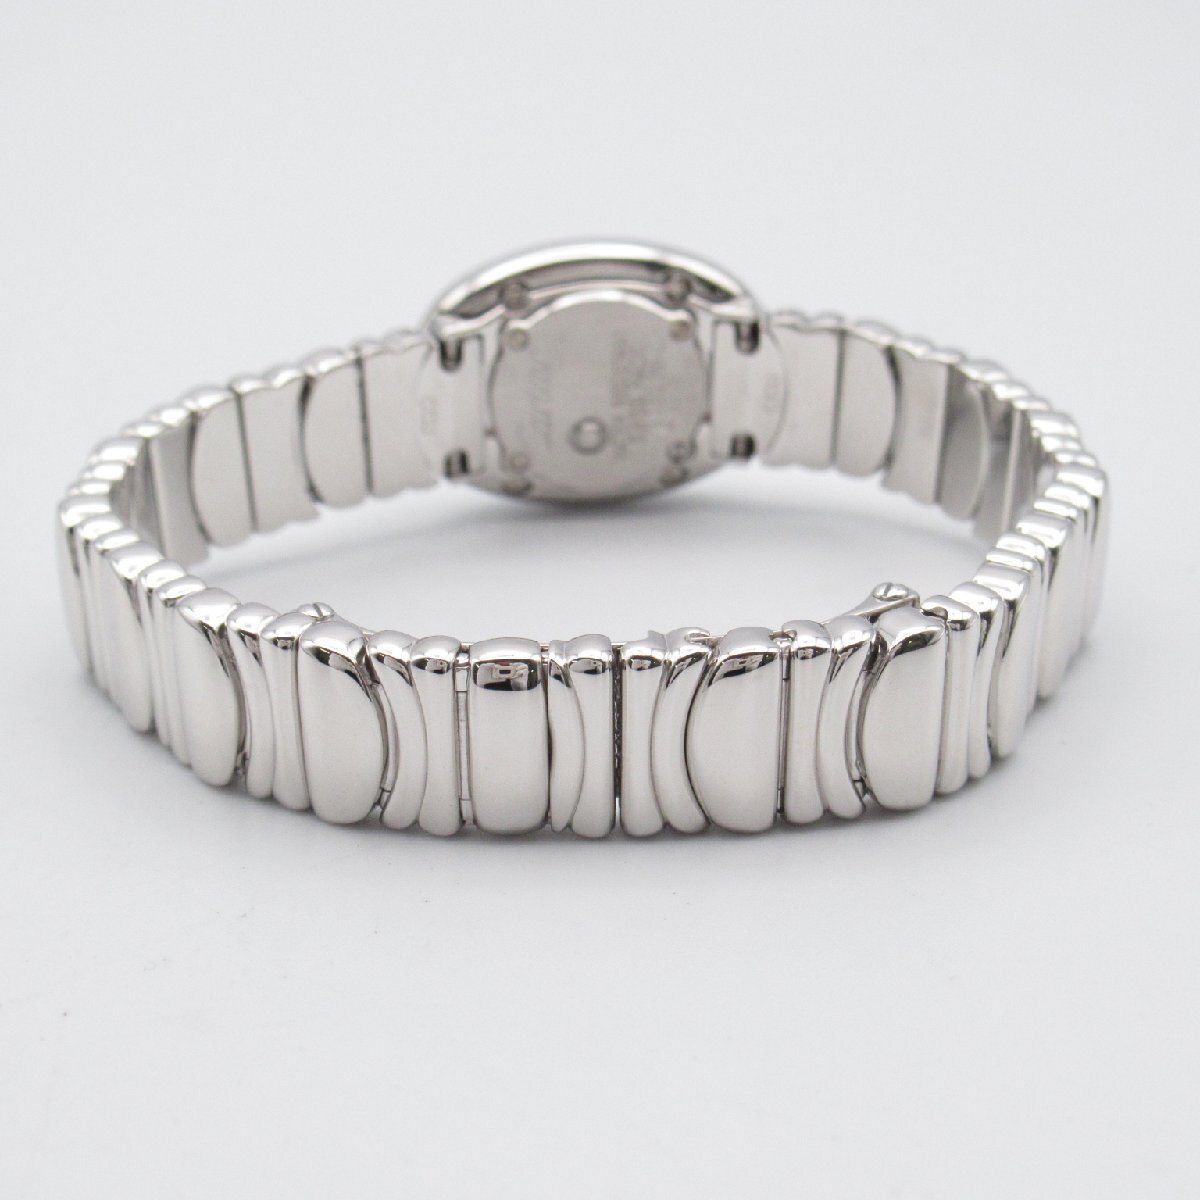  Cartier Mini Baignoire бриллиантовая оправа бренд off CARTIER K18WG( белое золото ) наручные часы WG б/у женский 